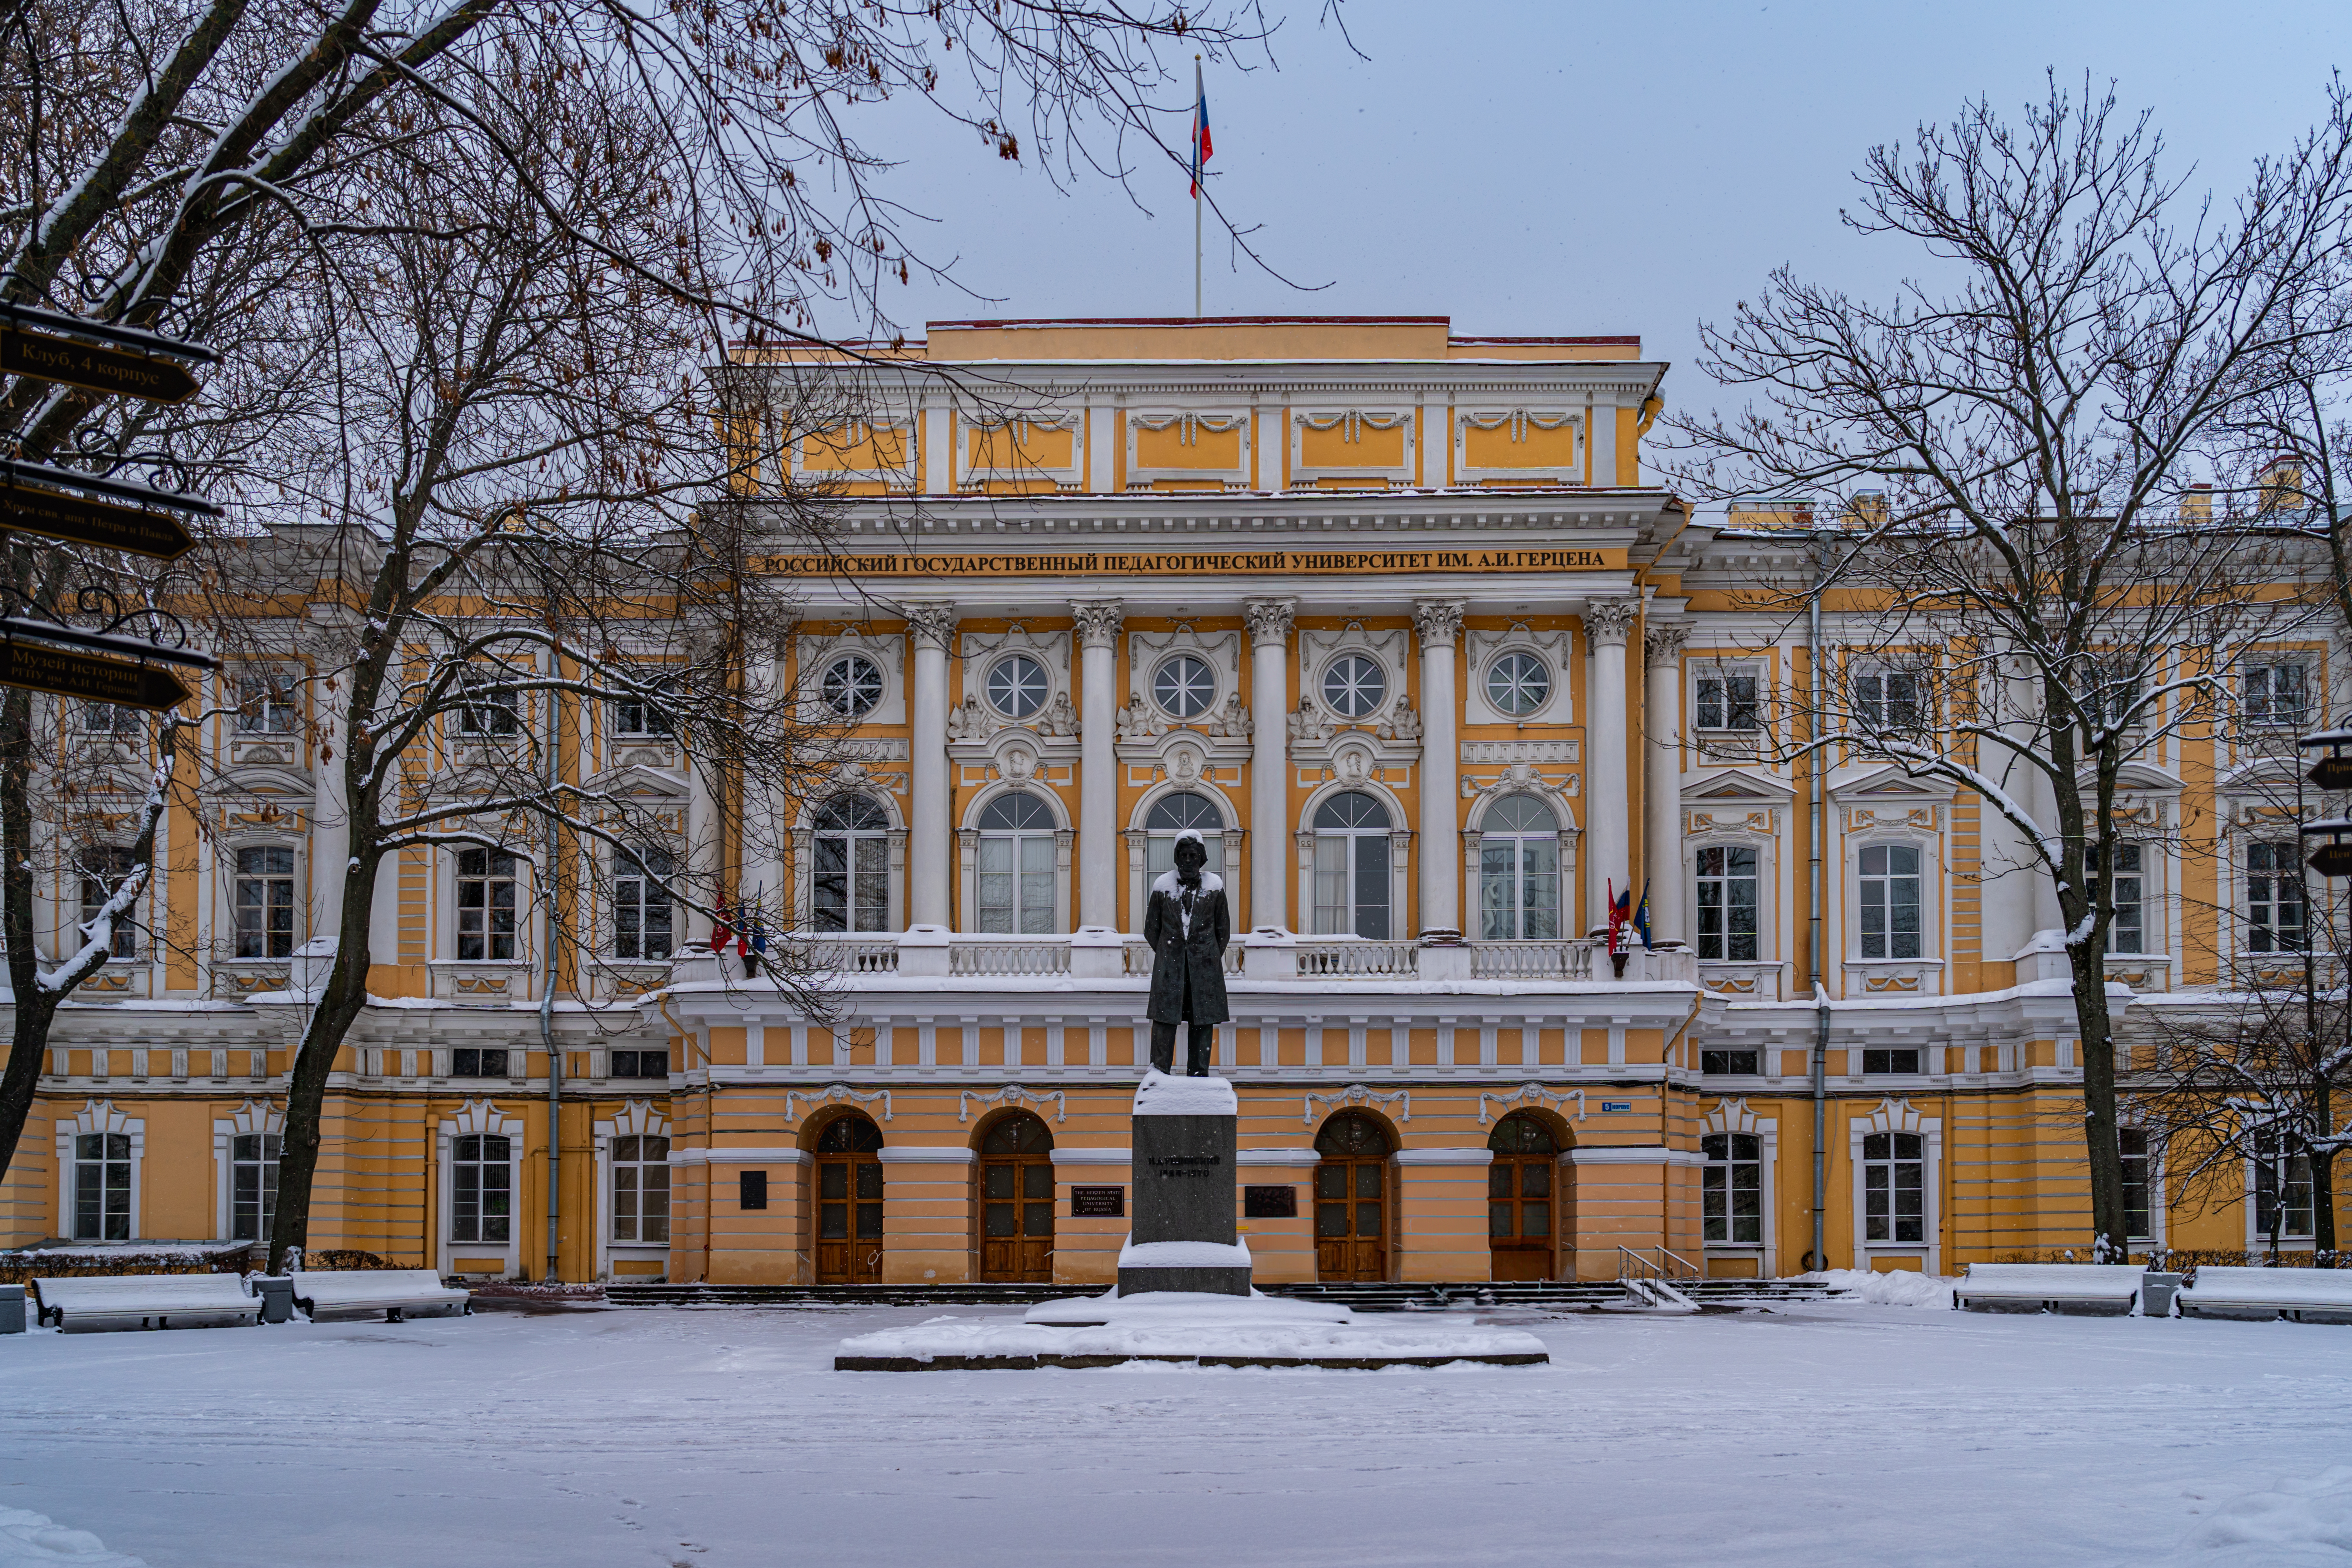 Razumovsky's Palace